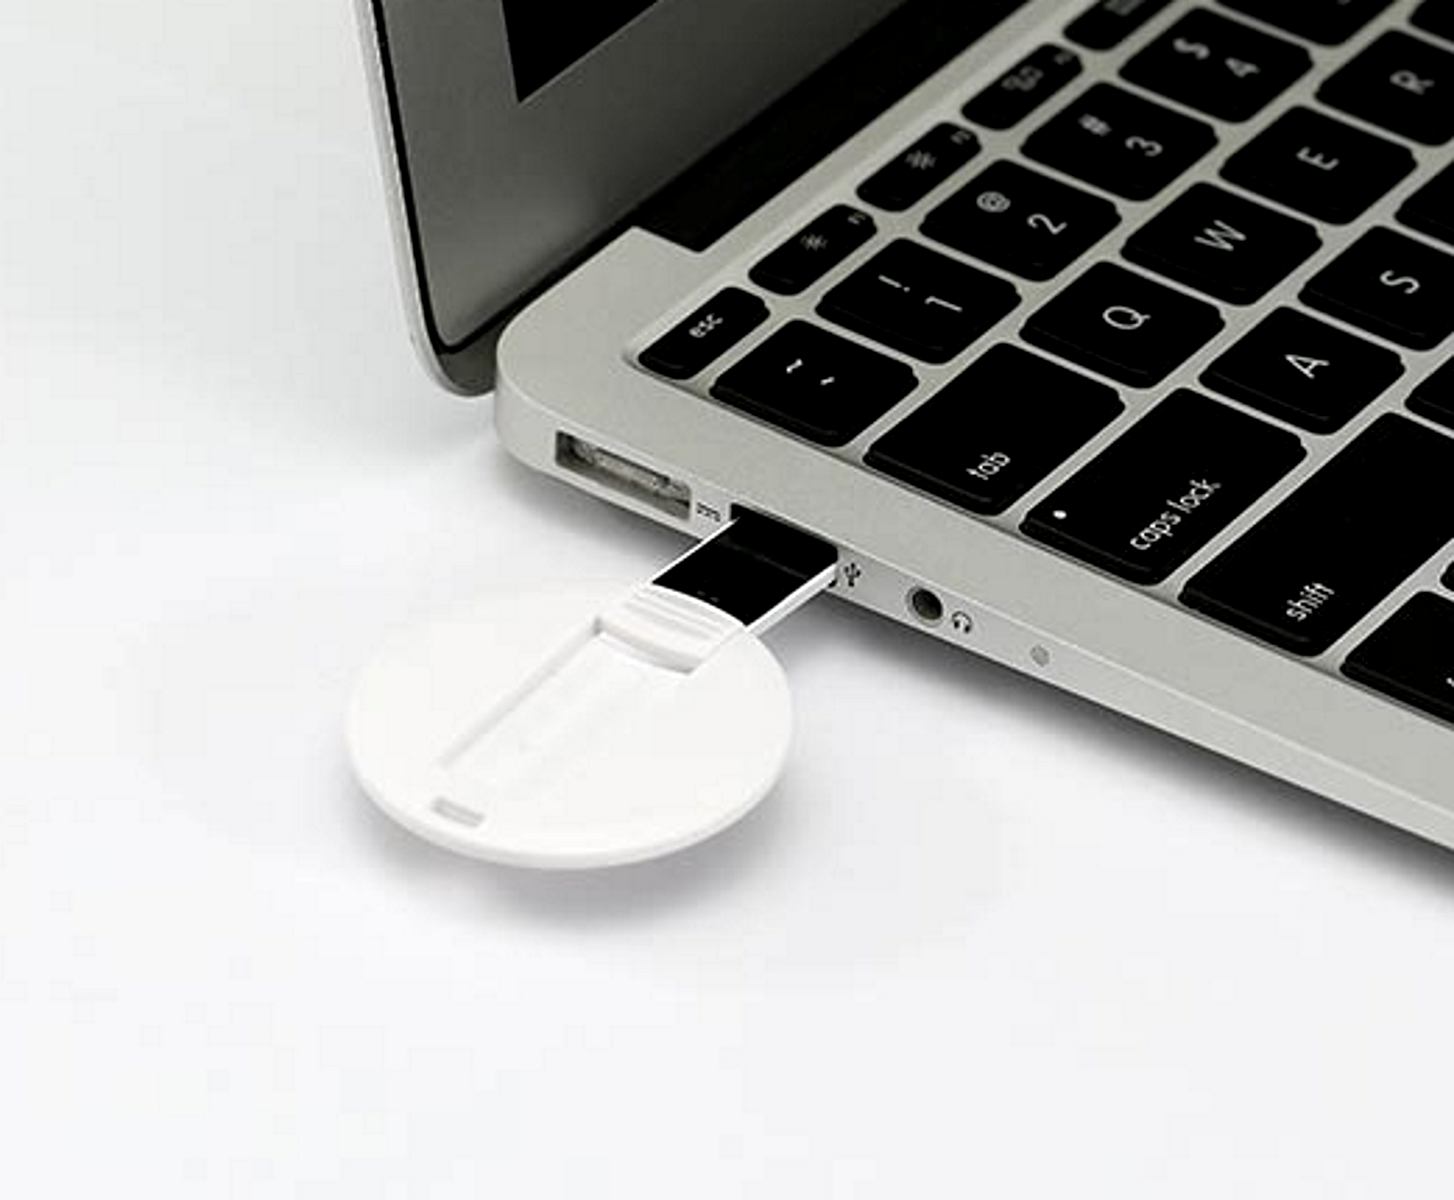 USB GERMANY ® USB-Stick GB) 8 DISC (Weiß